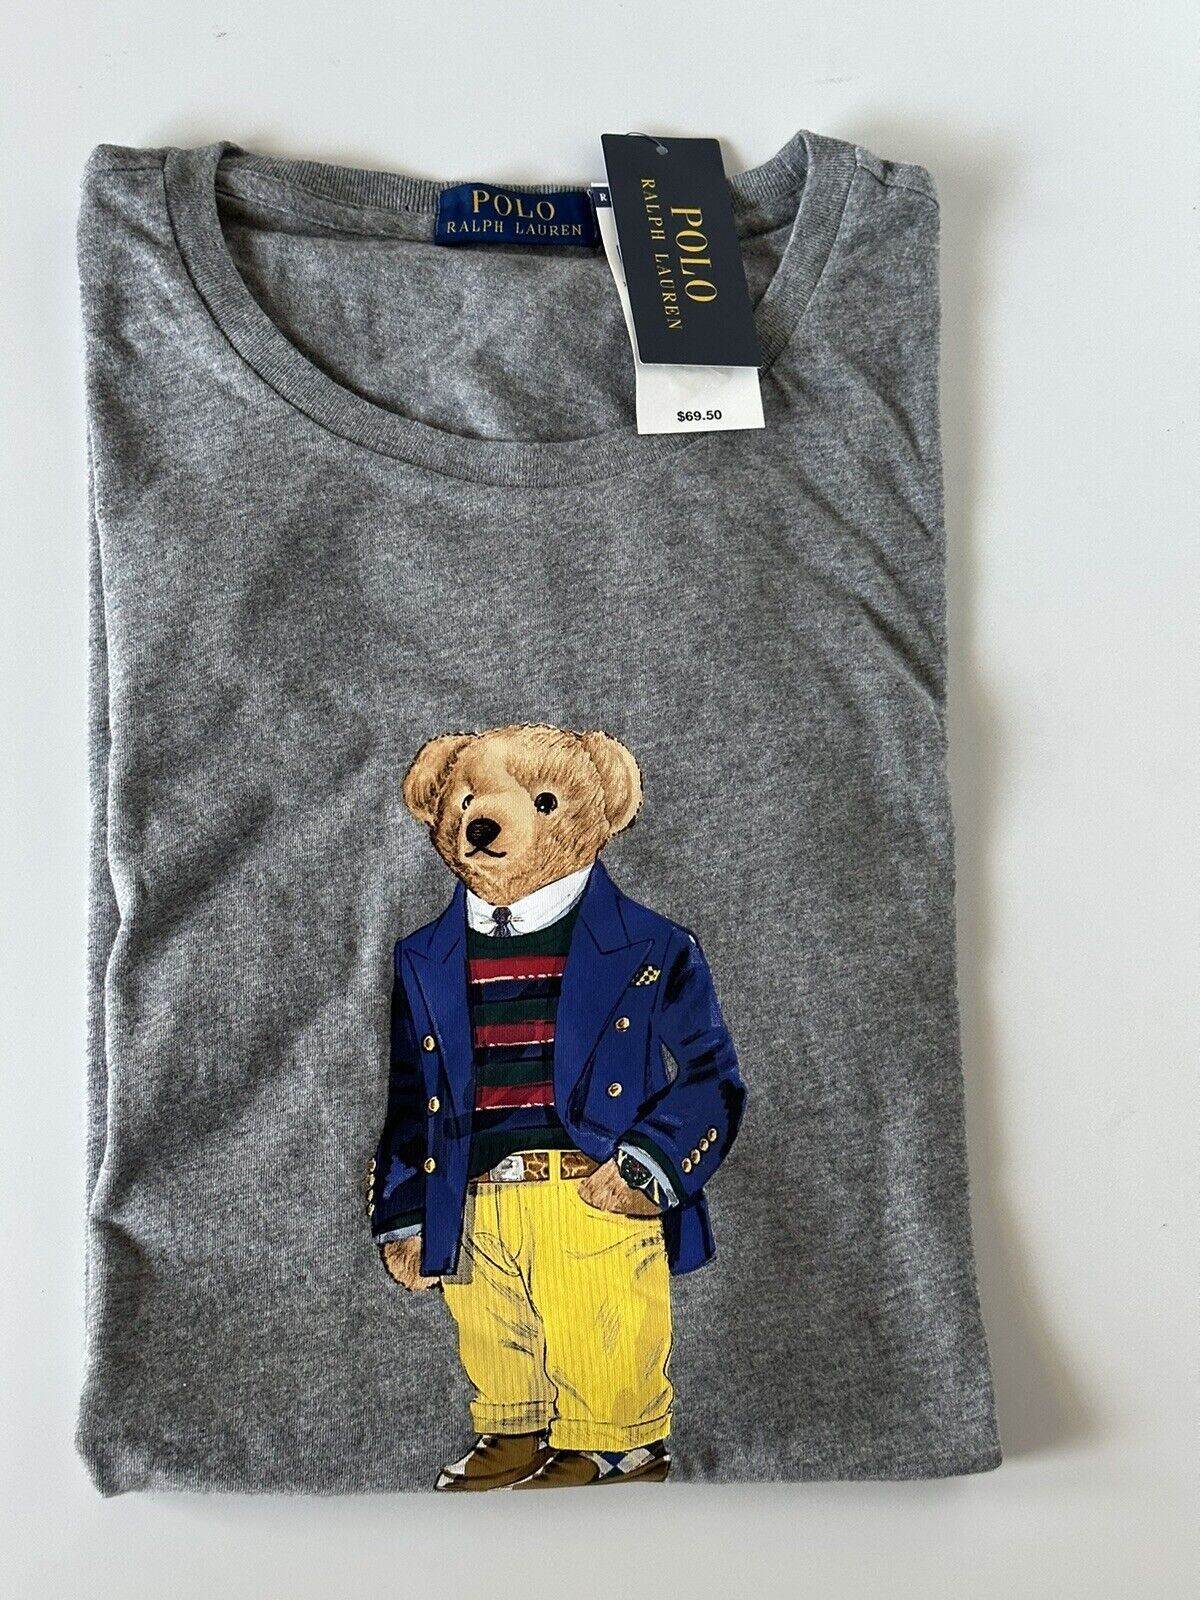 Neu mit Etikett: Polo Ralph Lauren Bear Baumwoll-T-Shirt, Grau, 2XL/2TG